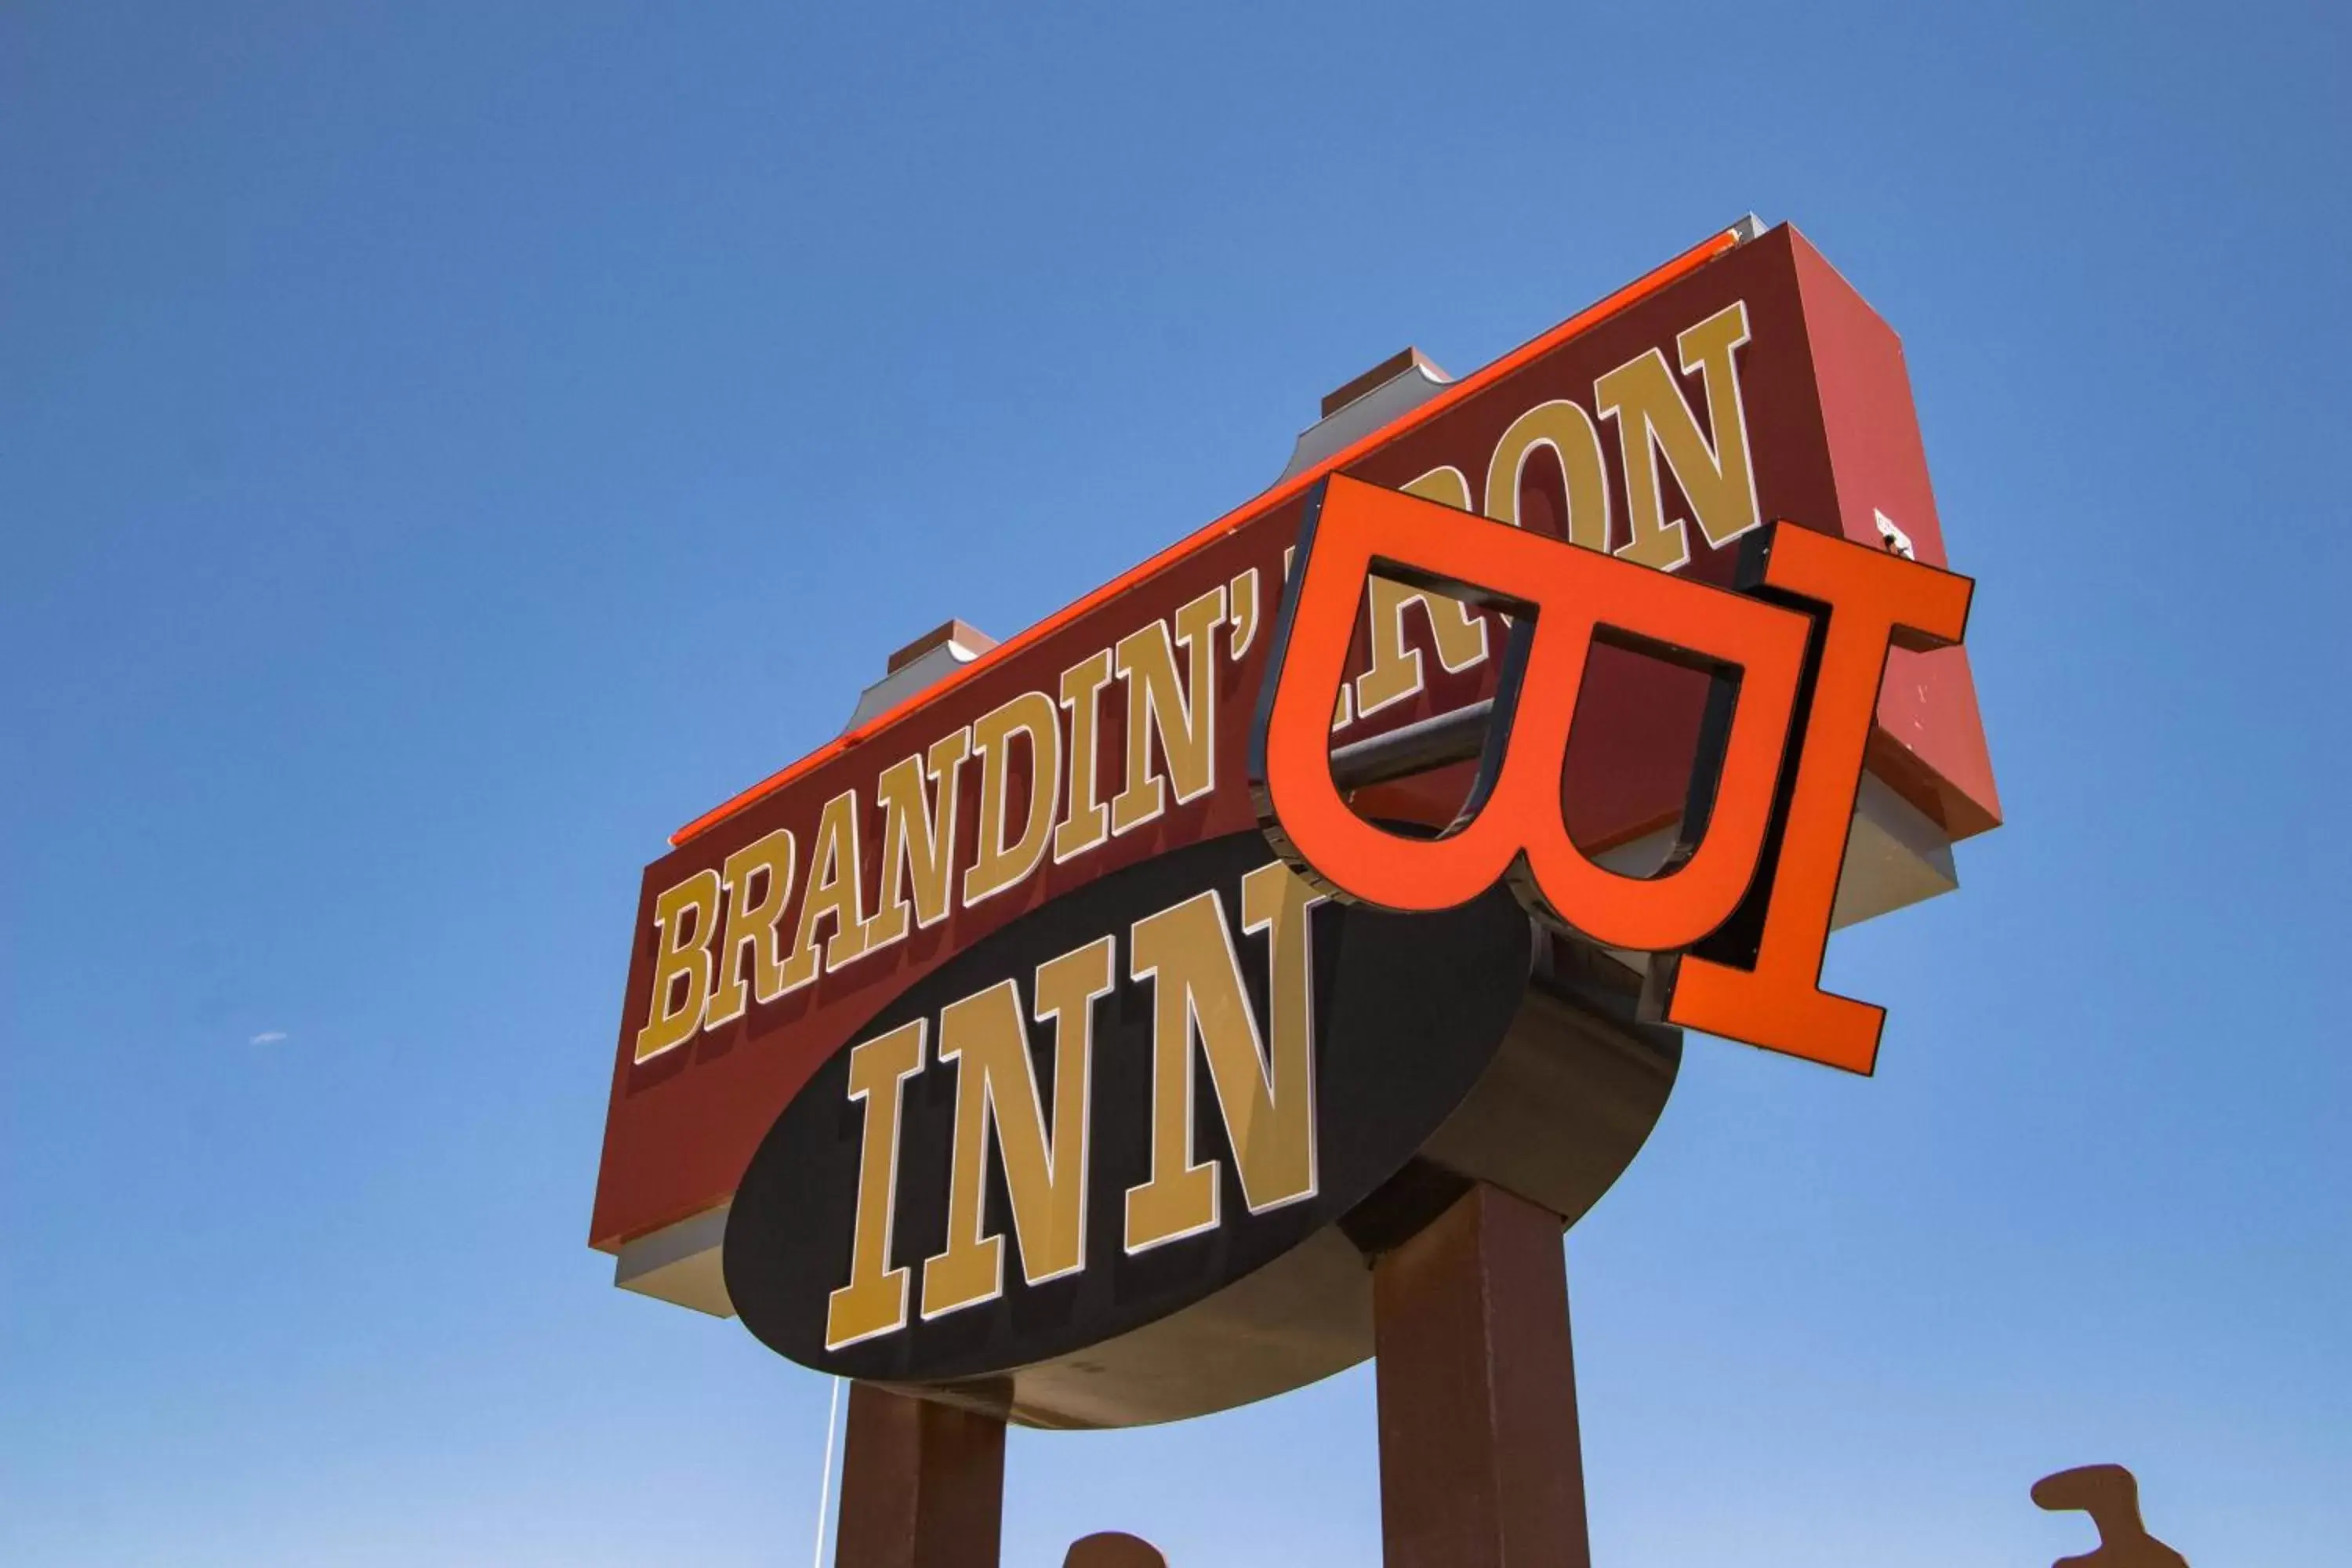 Property logo or sign in Brandin' Iron Inn